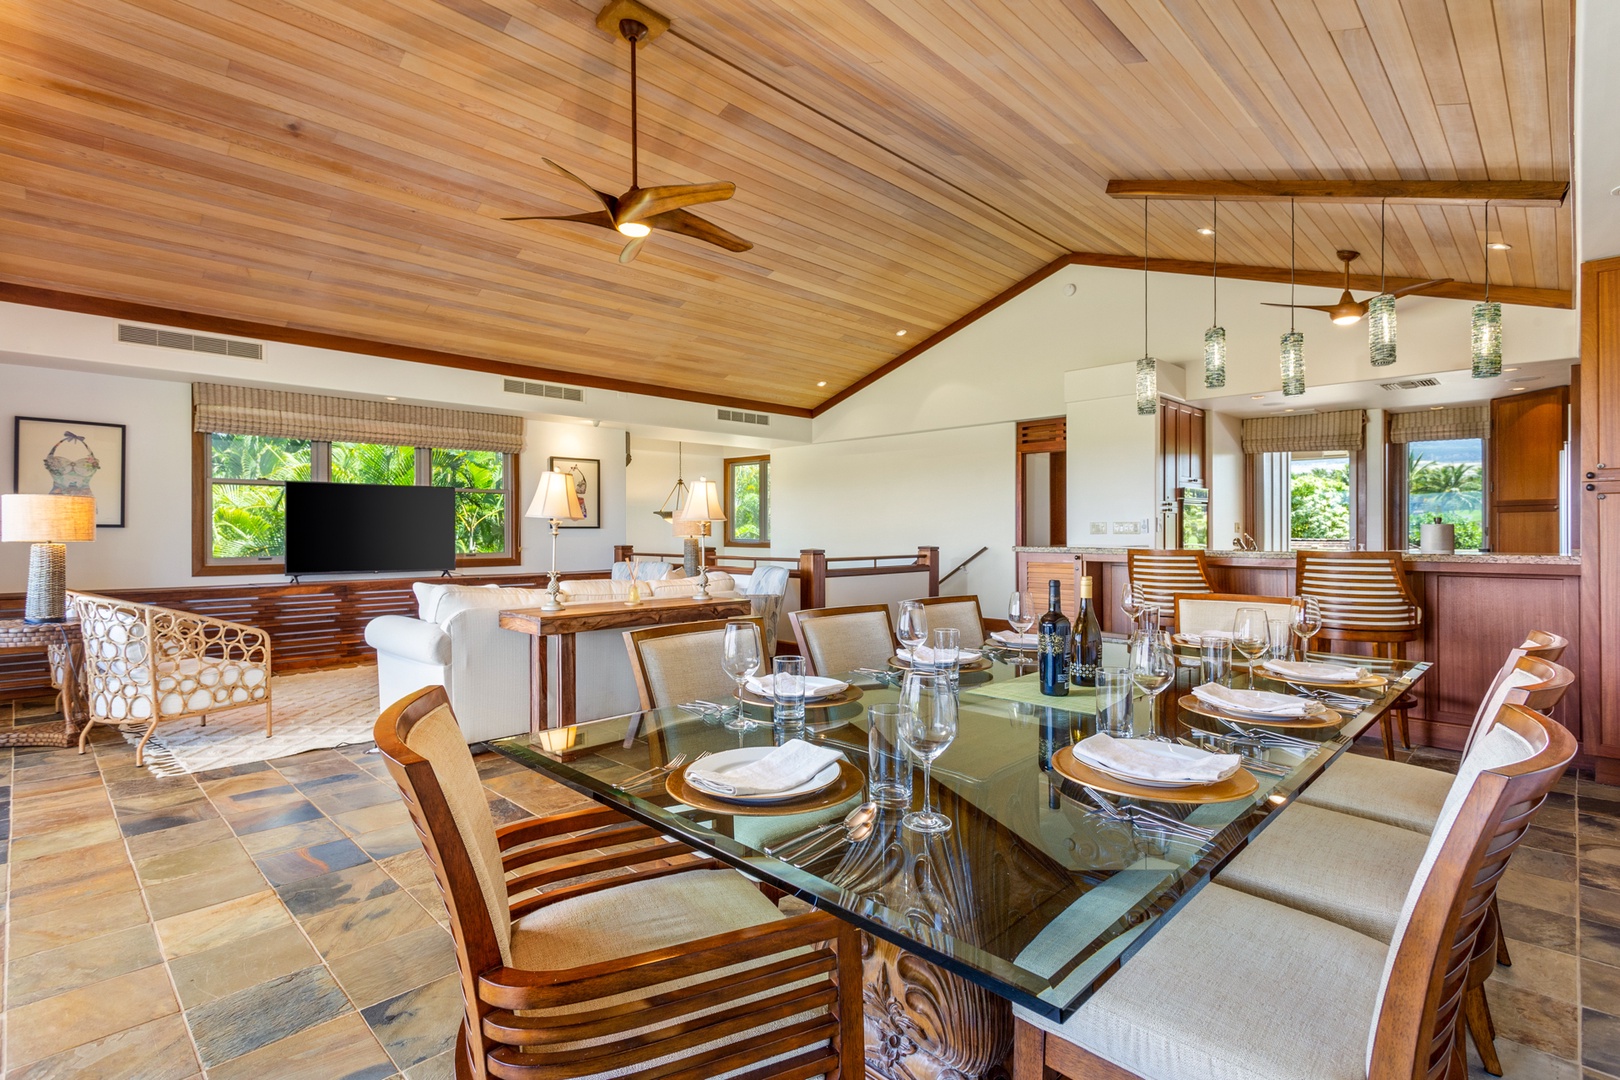 Kailua Kona Vacation Rentals, 3BD Ka'Ulu Villa (129D) at Four Seasons Resort at Hualalai - View of dining table toward the modern kitchen with bar seating.